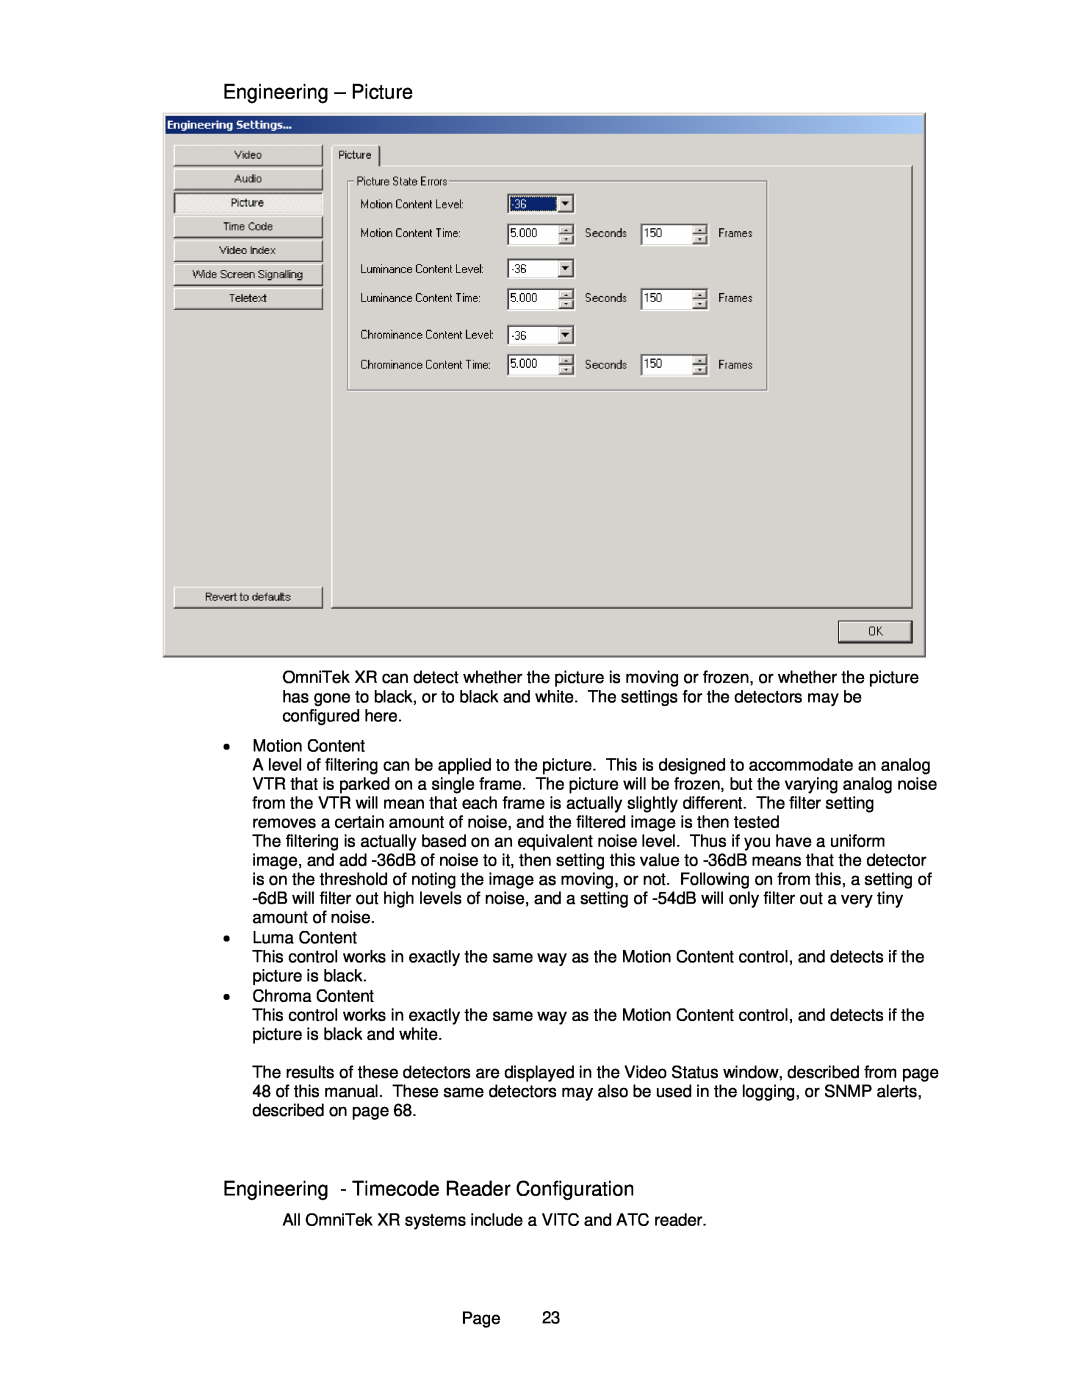 OmniTek OmniTek XR manual Engineering - Picture, Engineering - Timecode Reader Configuration 